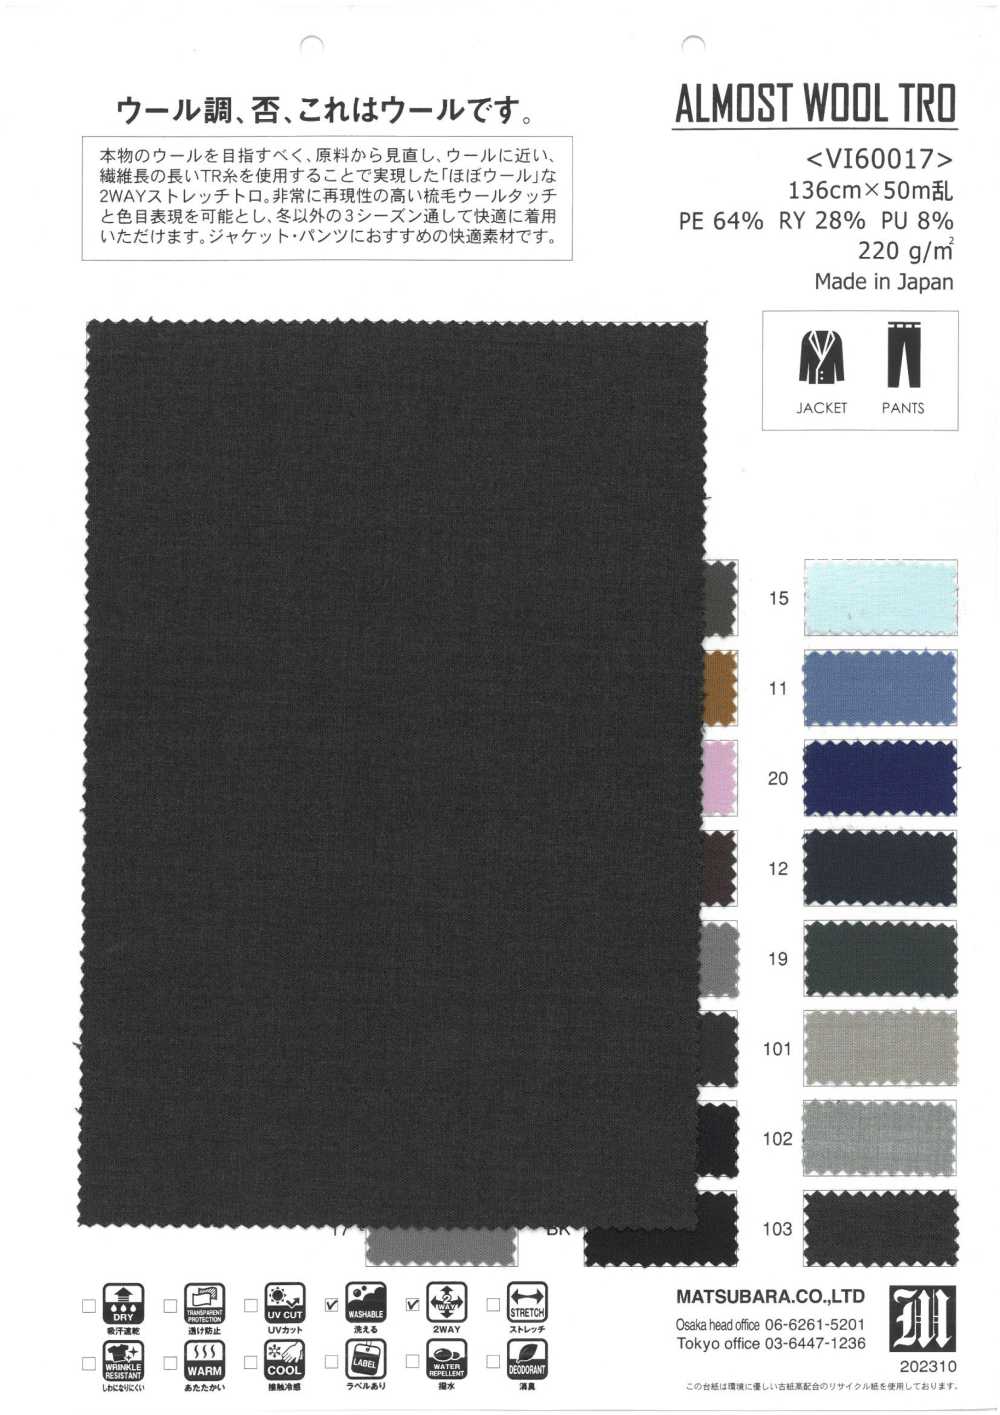 VI60017 QUASE LÃ TRO[Têxtil / Tecido] Matsubara